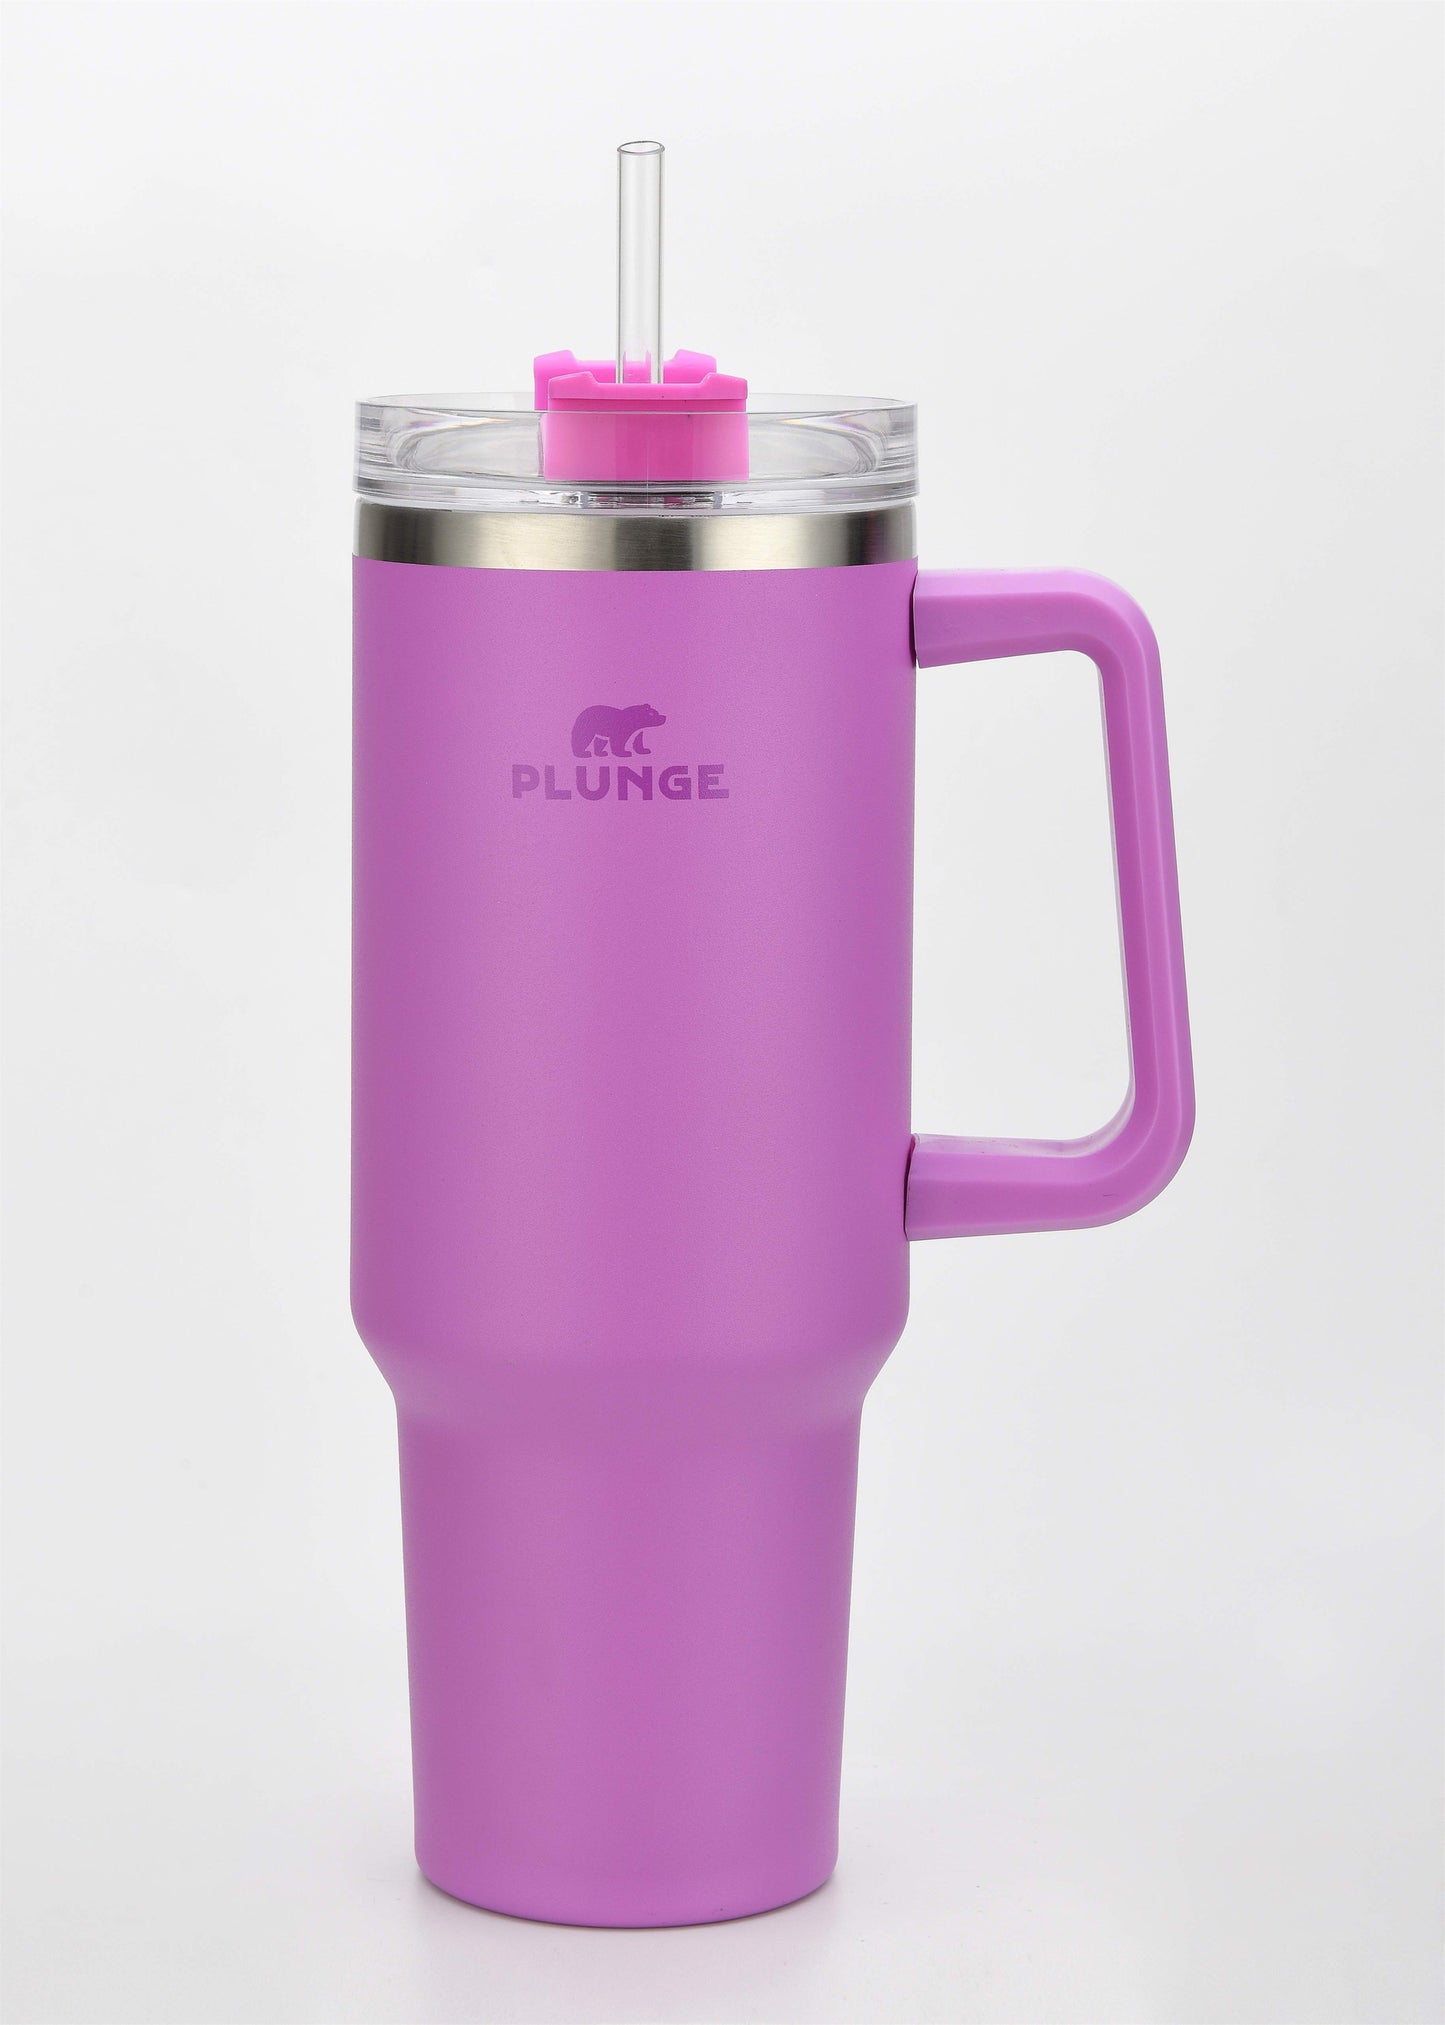 Plunge Mug Cup Tumblers – PlungeMugs